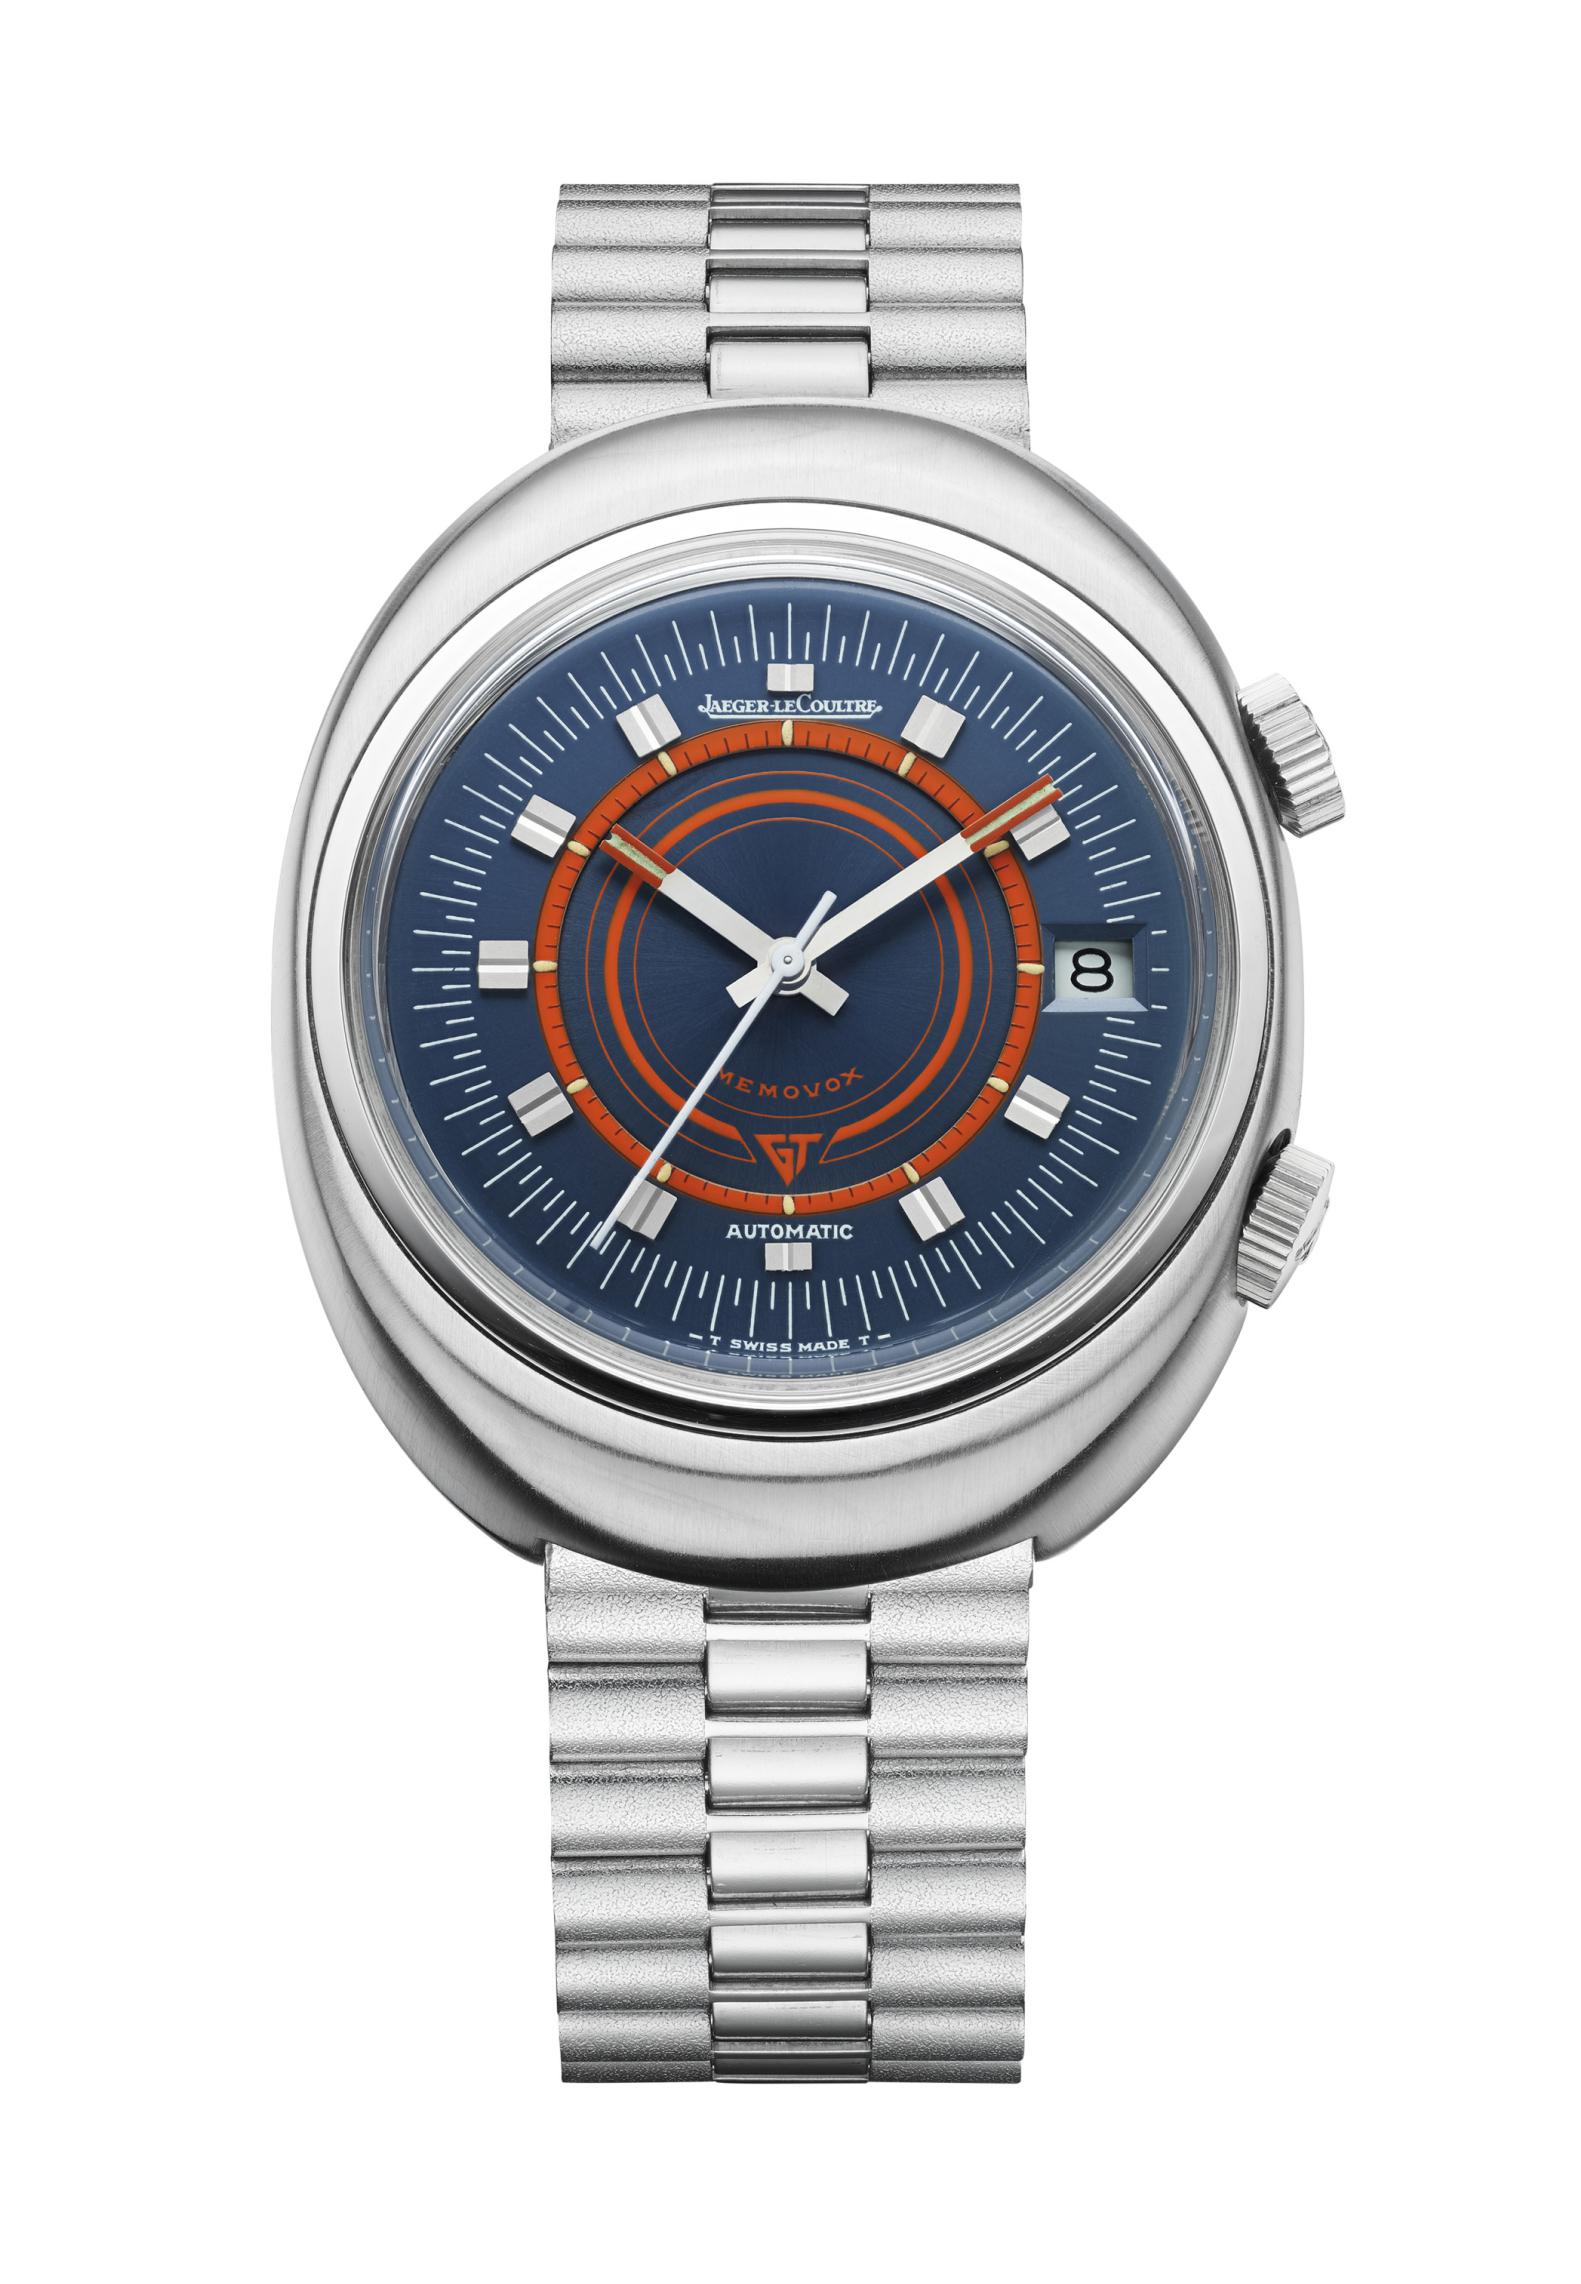 Часы Memovox Speed Beat GT, Jaeger-LeCoultre, 1972 год